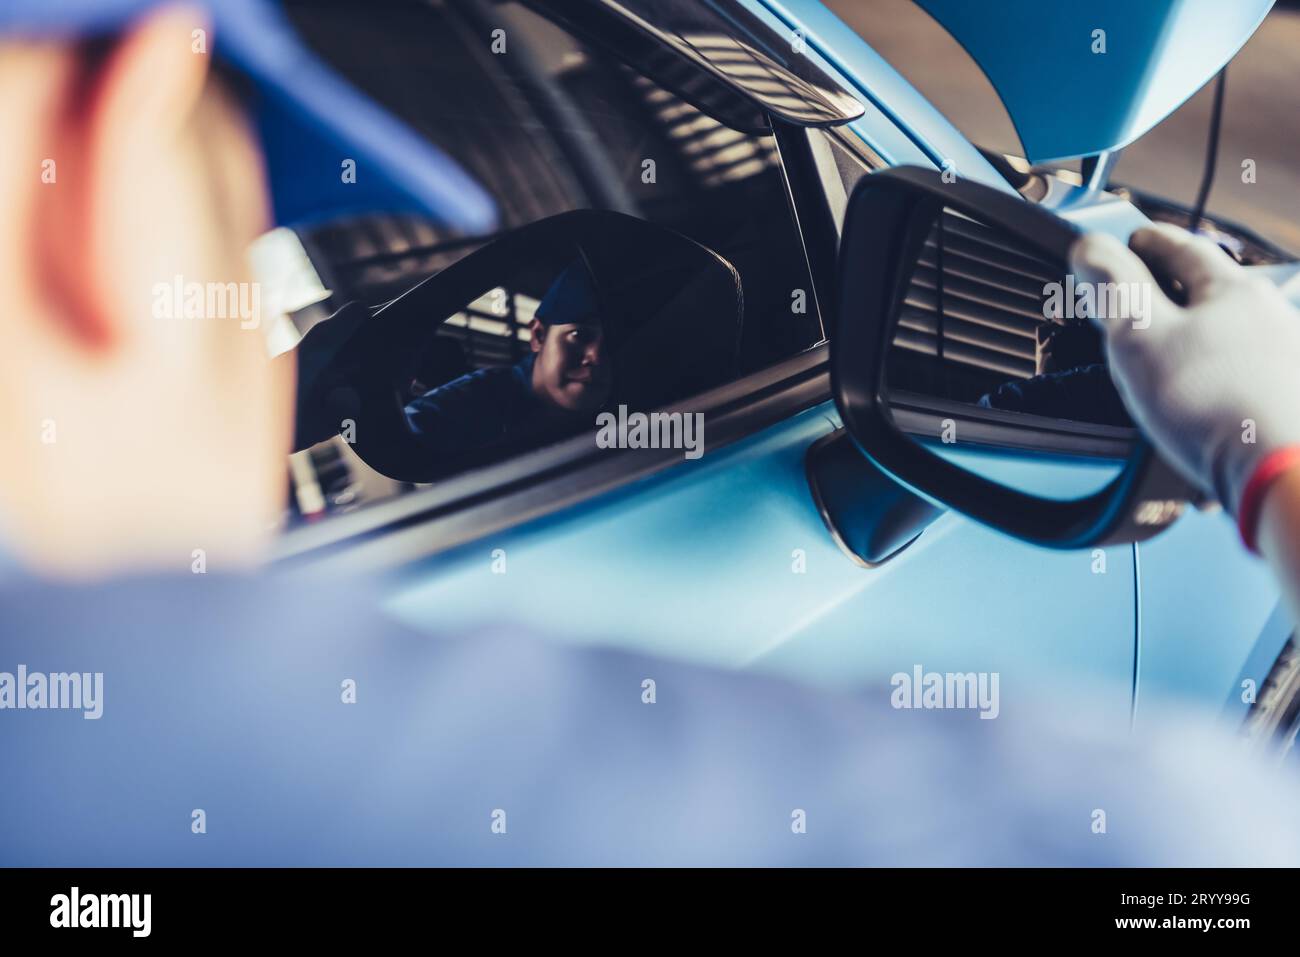 Il tecnico meccanico sta guardando lo specchietto retrovisore per controllare il veicolo in manutenzione in base all'ordine di richiesta di rimborso del cliente in auto r Foto Stock